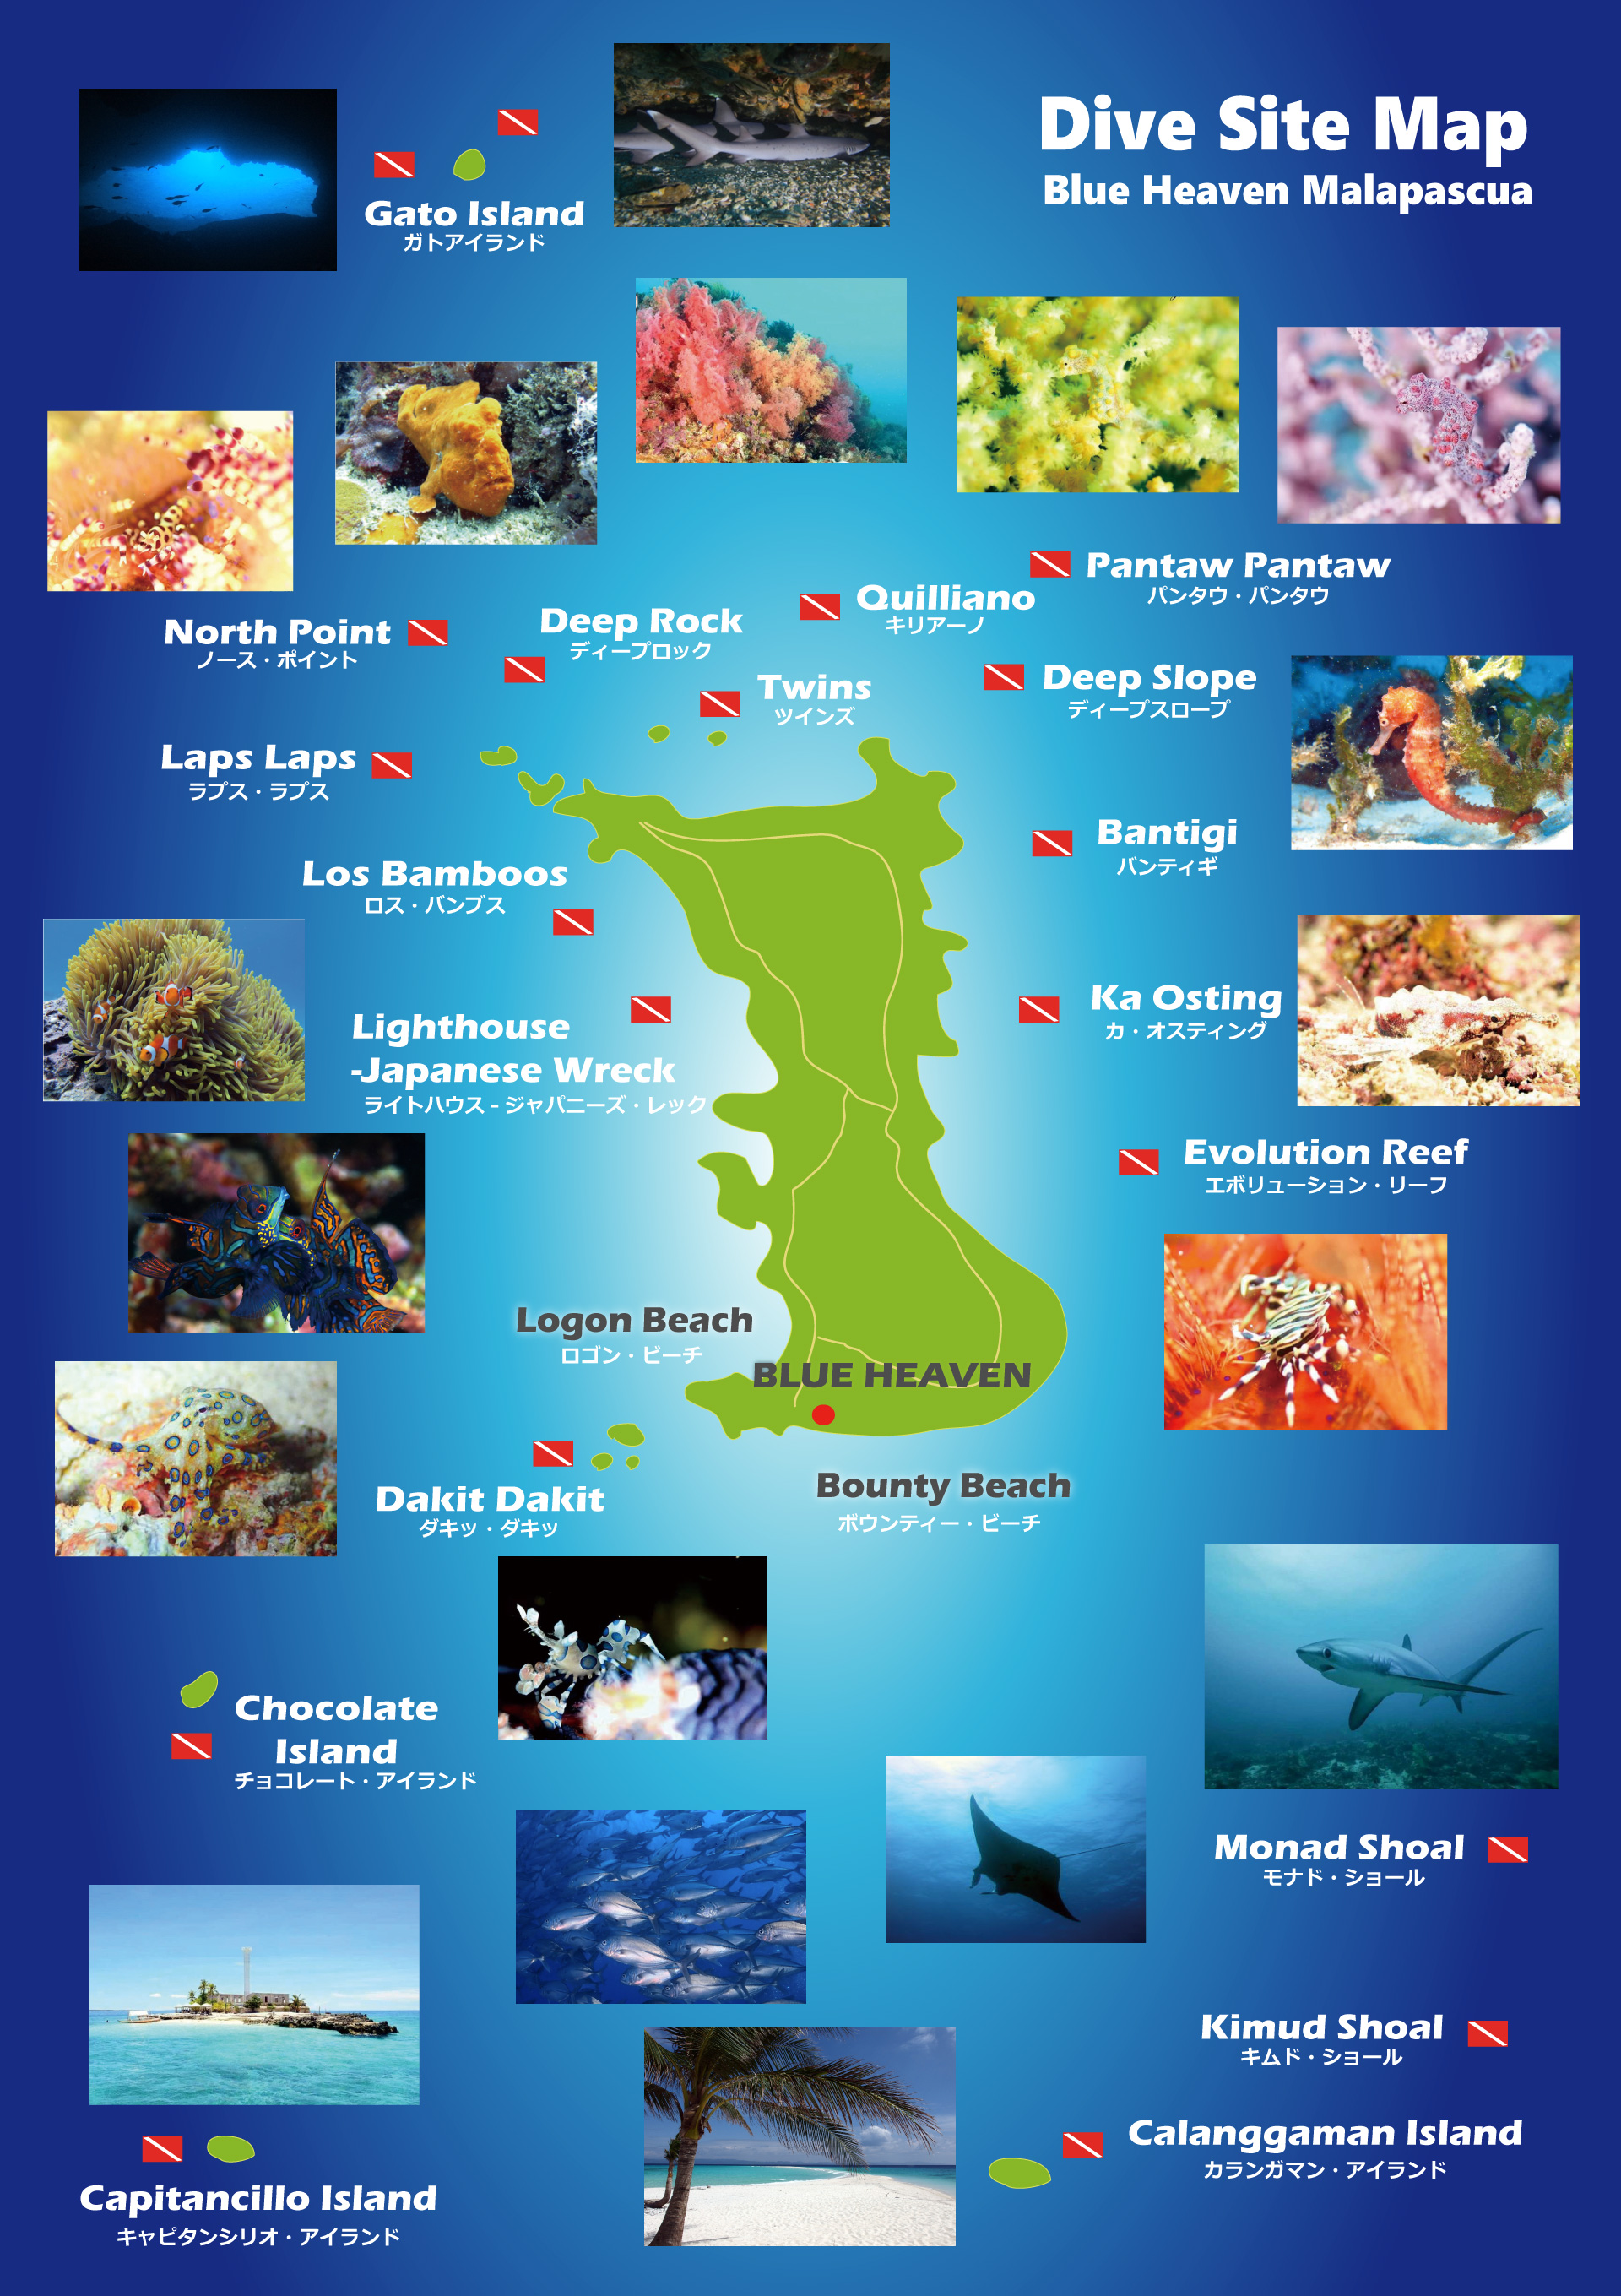 マラパスクア島・ダイブサイト・マップ- Malapascua Dive Site Map